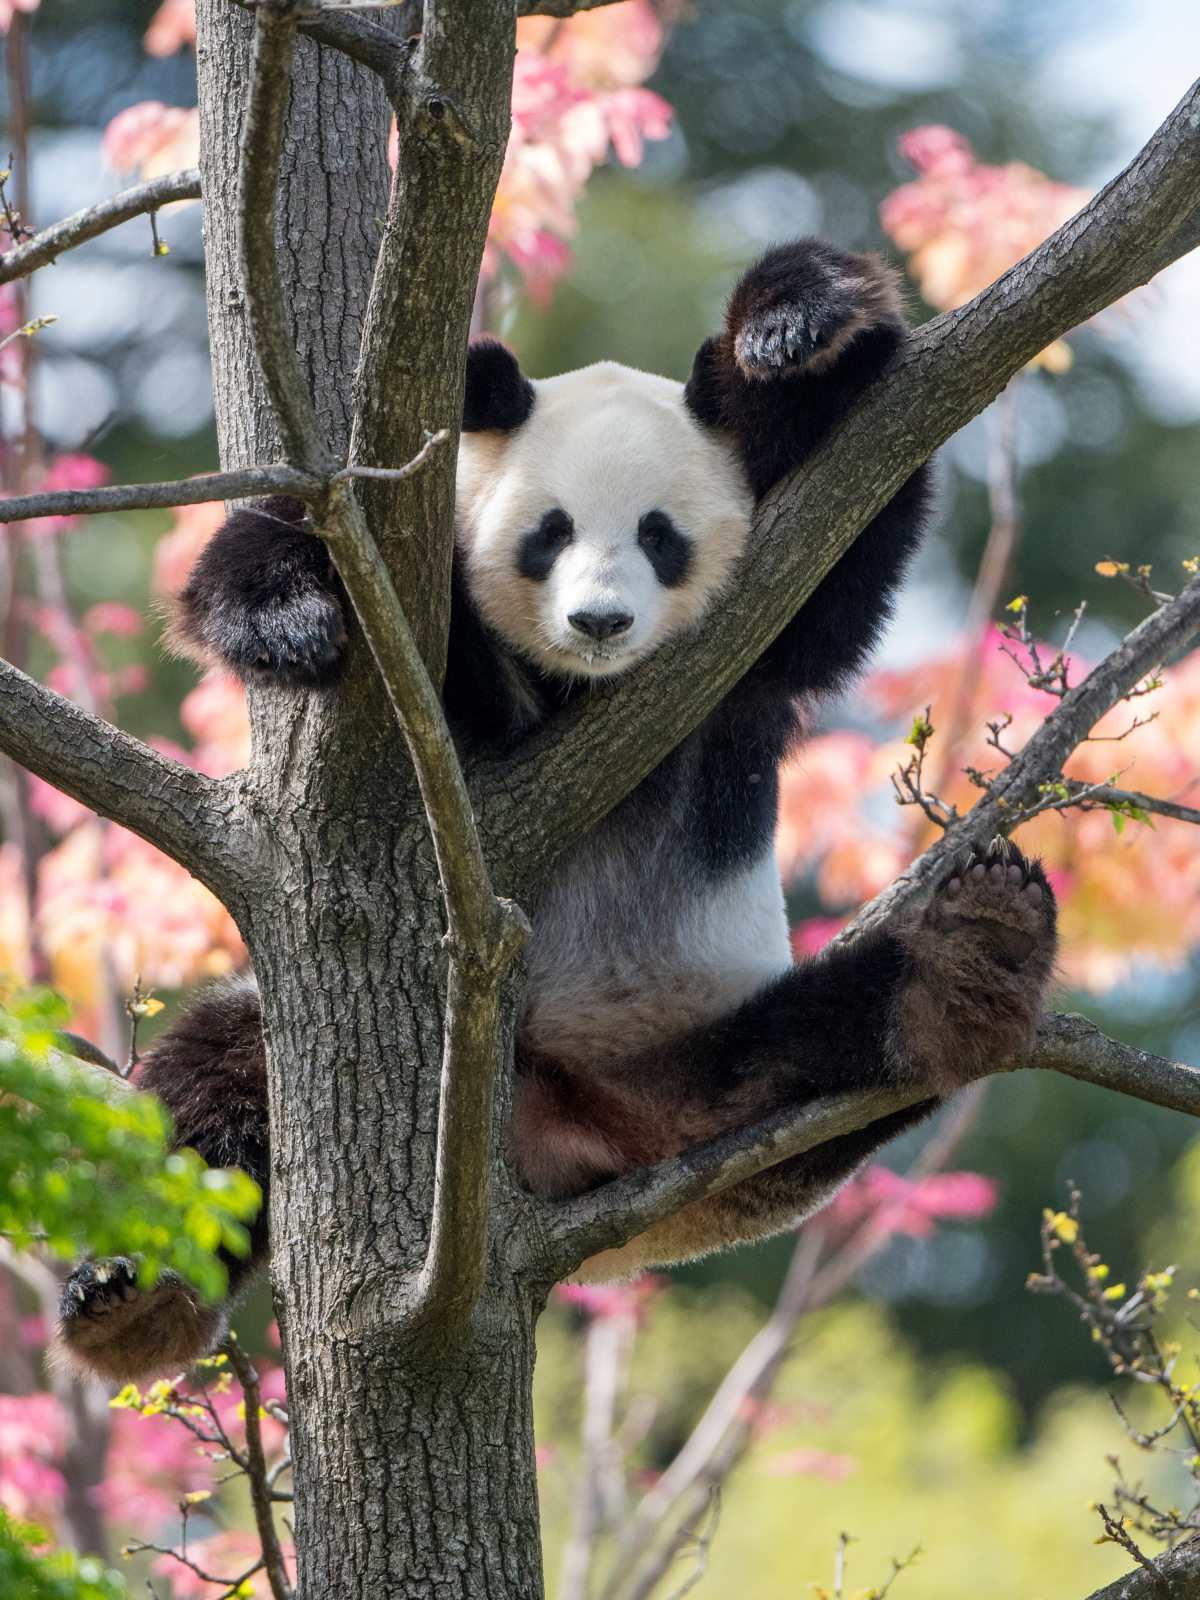 A Panda climbing in a tree